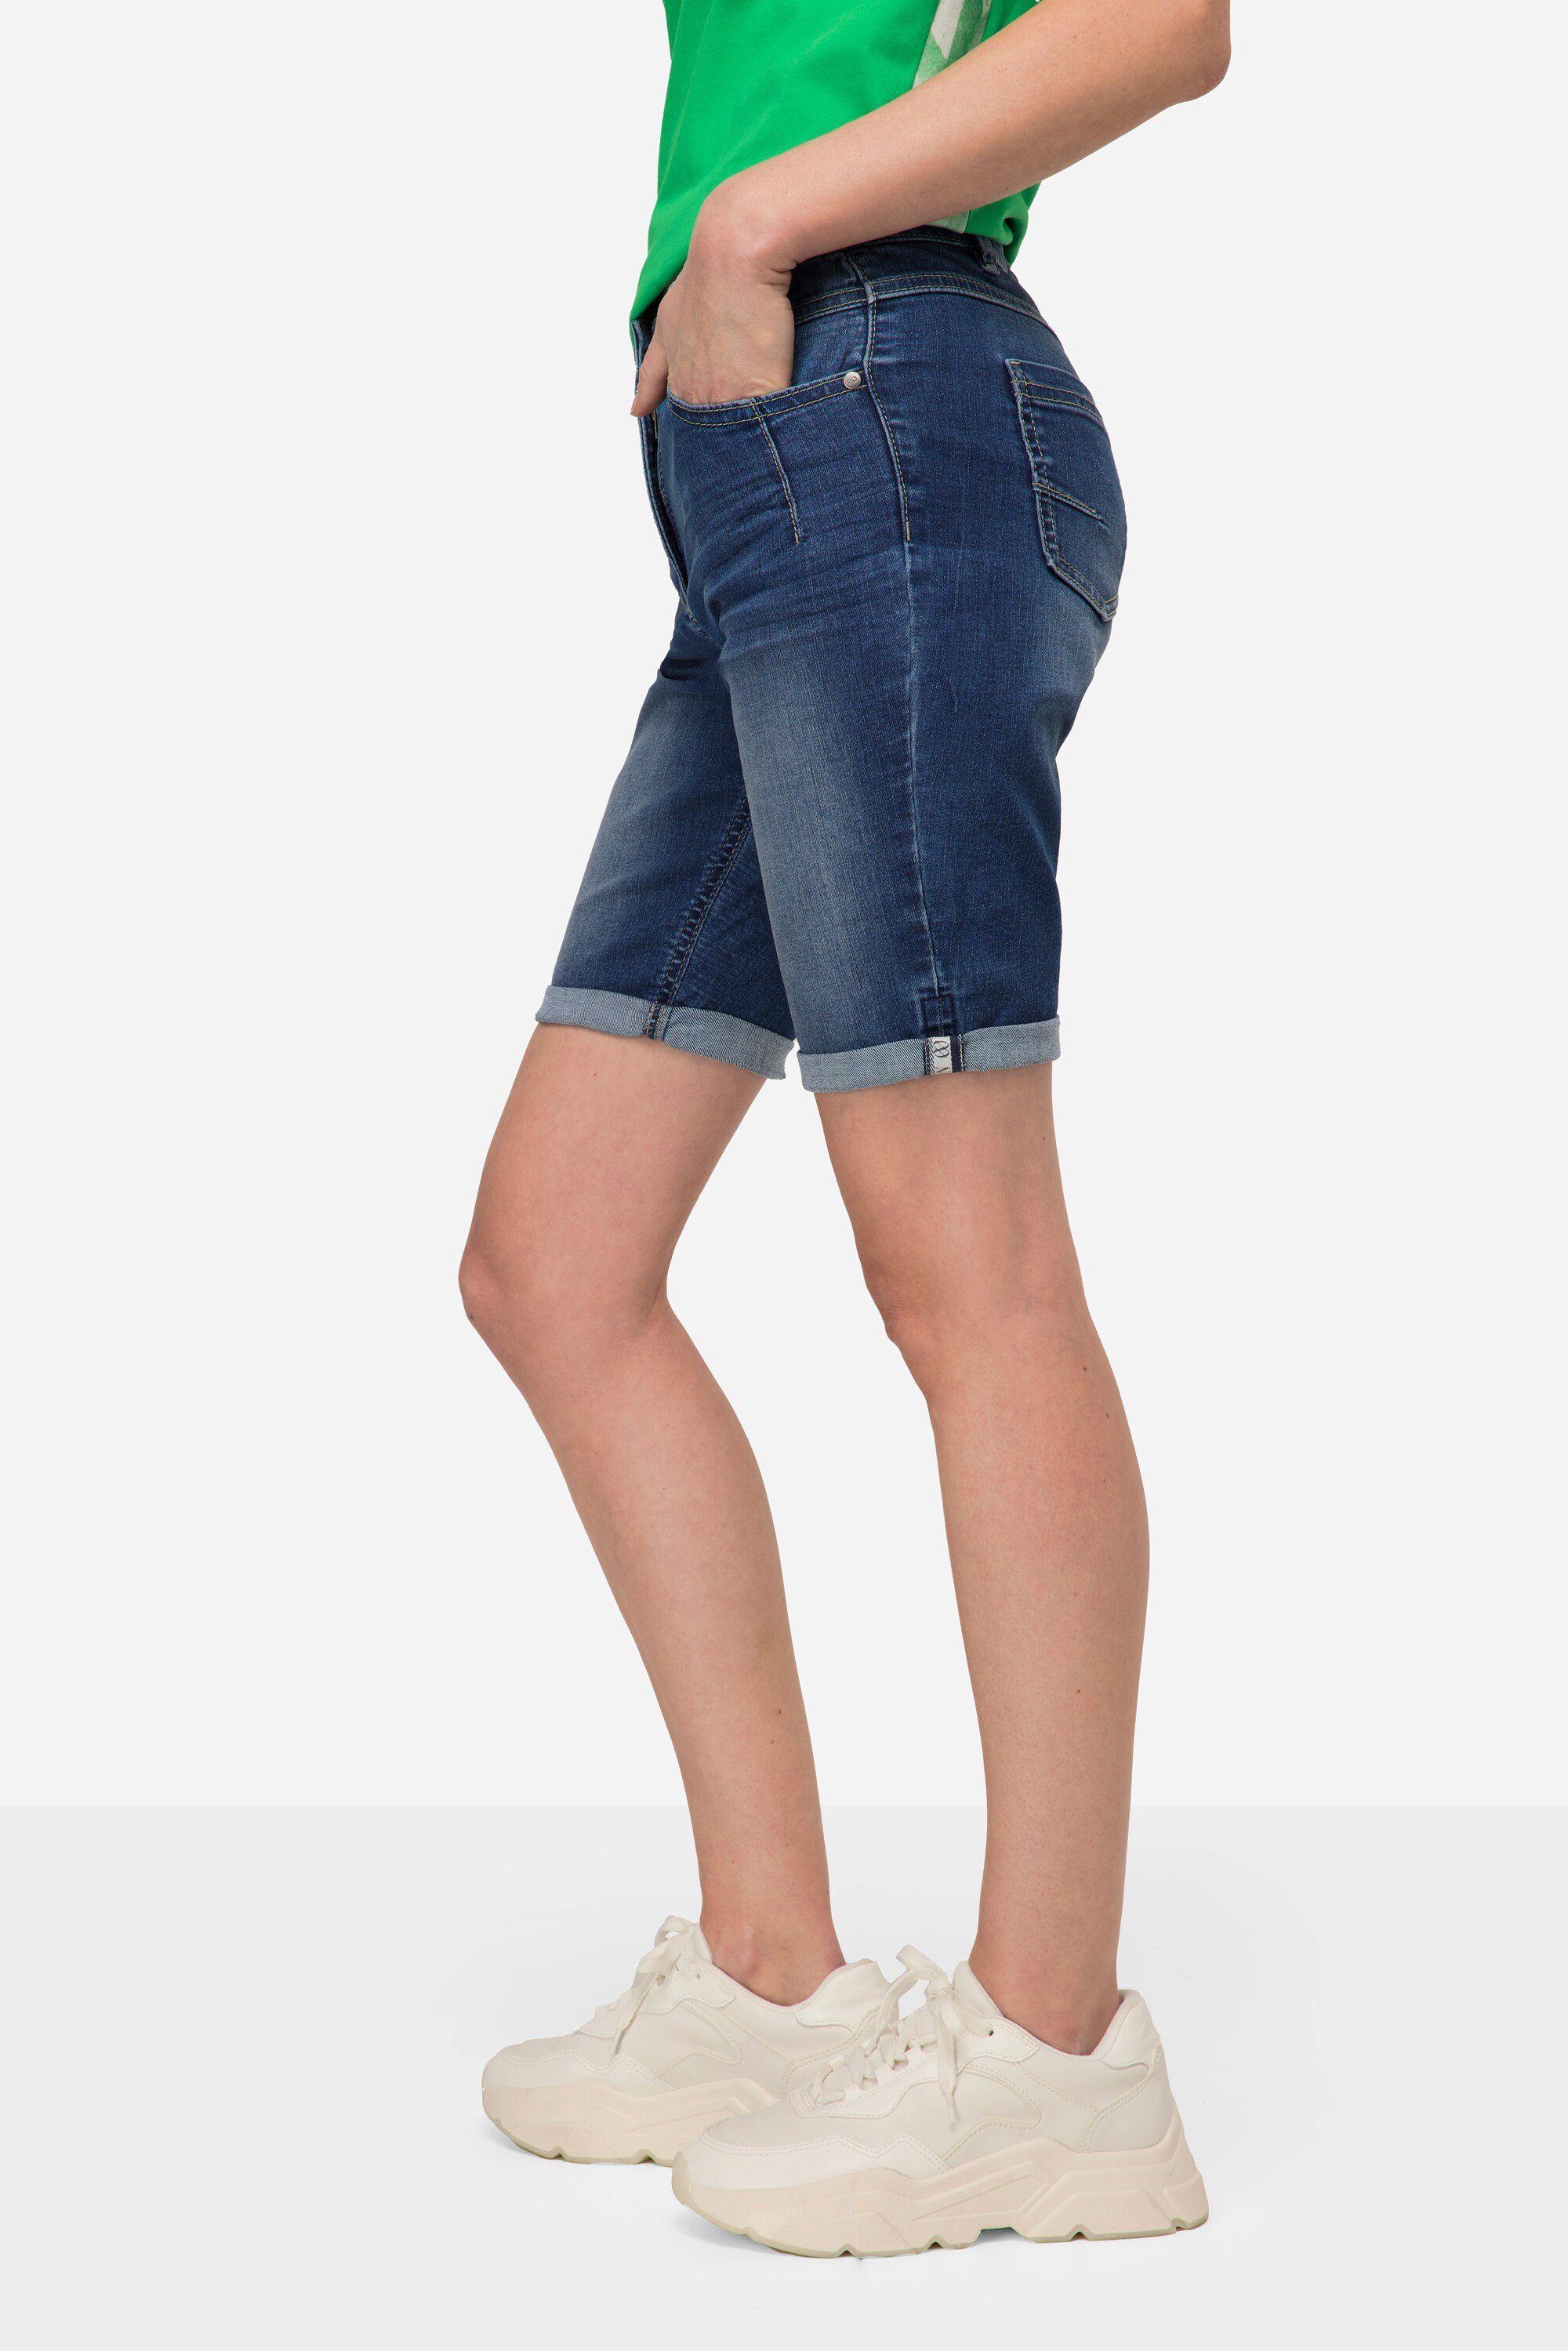 Laurasøn Regular-fit-Jeans Jeans-Shorts denim 5-Pocket blue Elastikbund